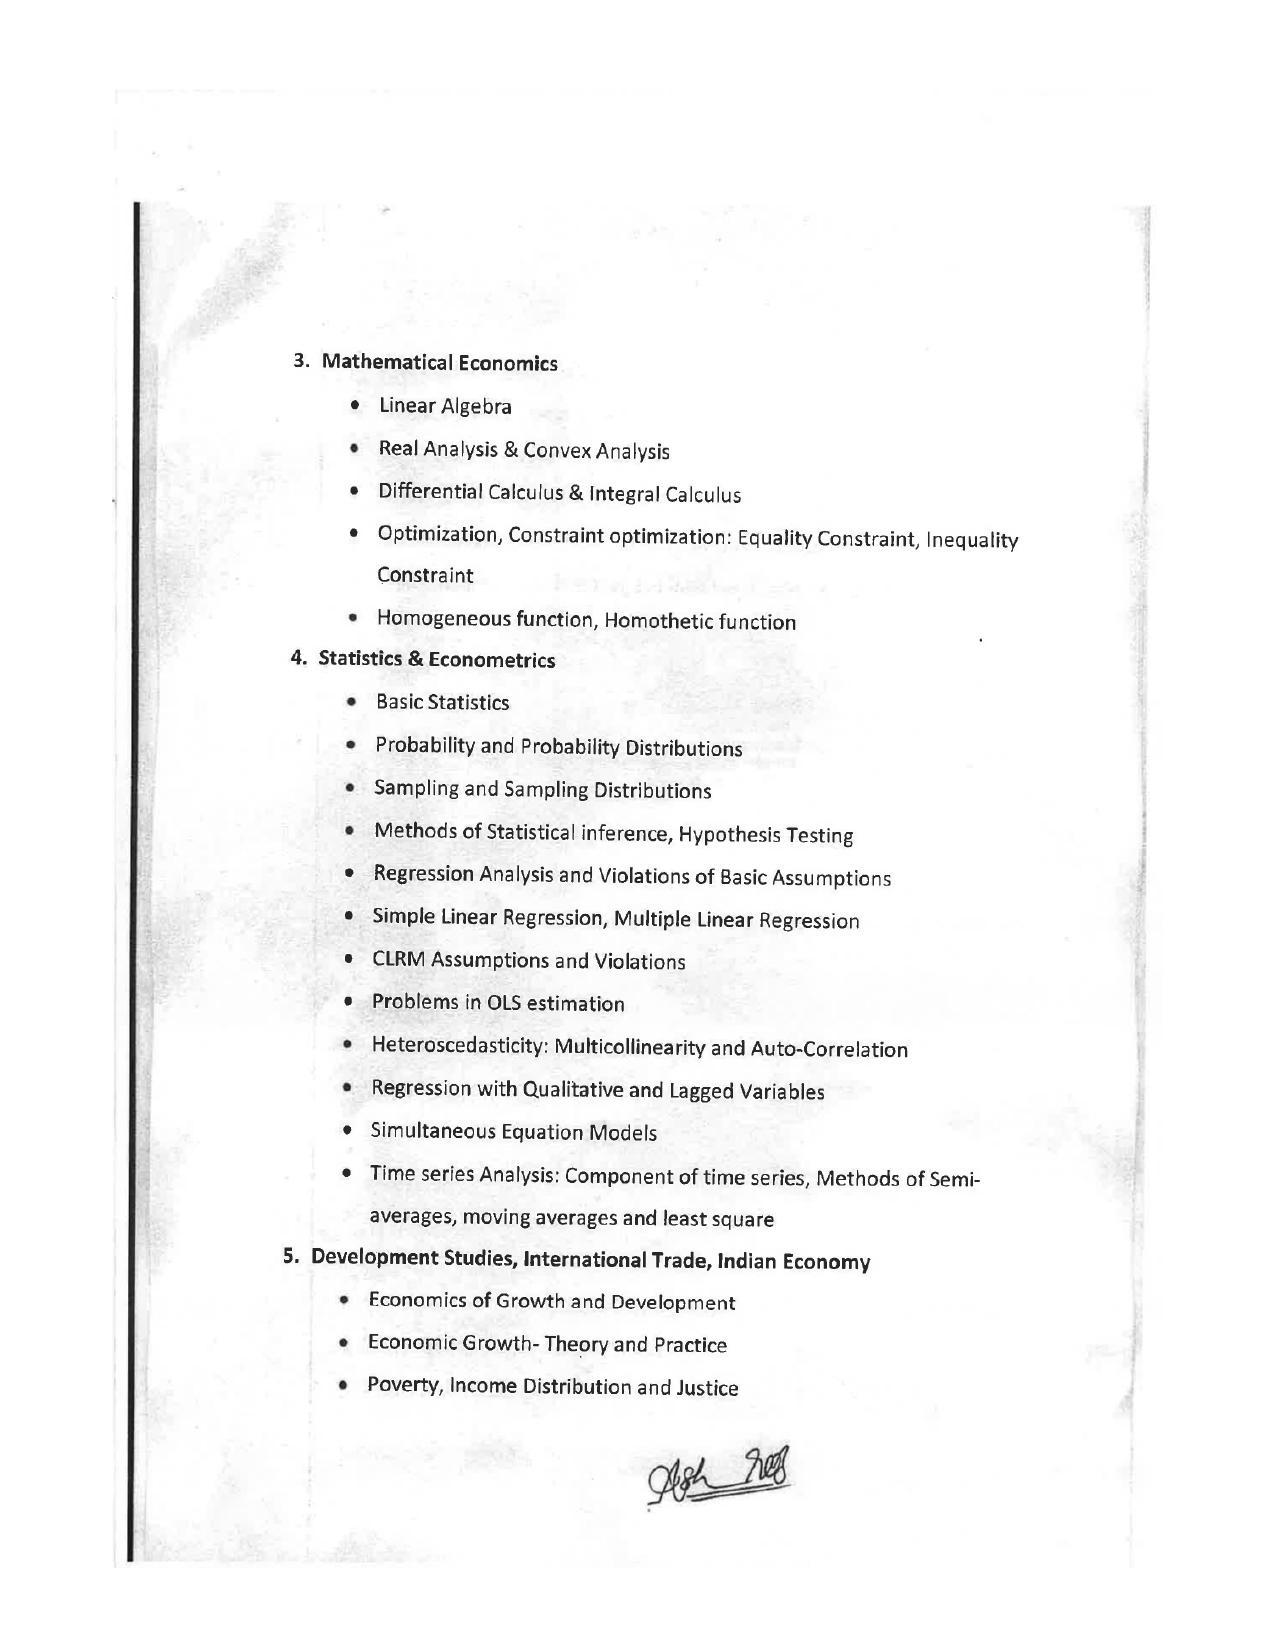 JMI Entrance Exam FACULTY OF SOCIAL SCIENCES Syllabus - Page 14